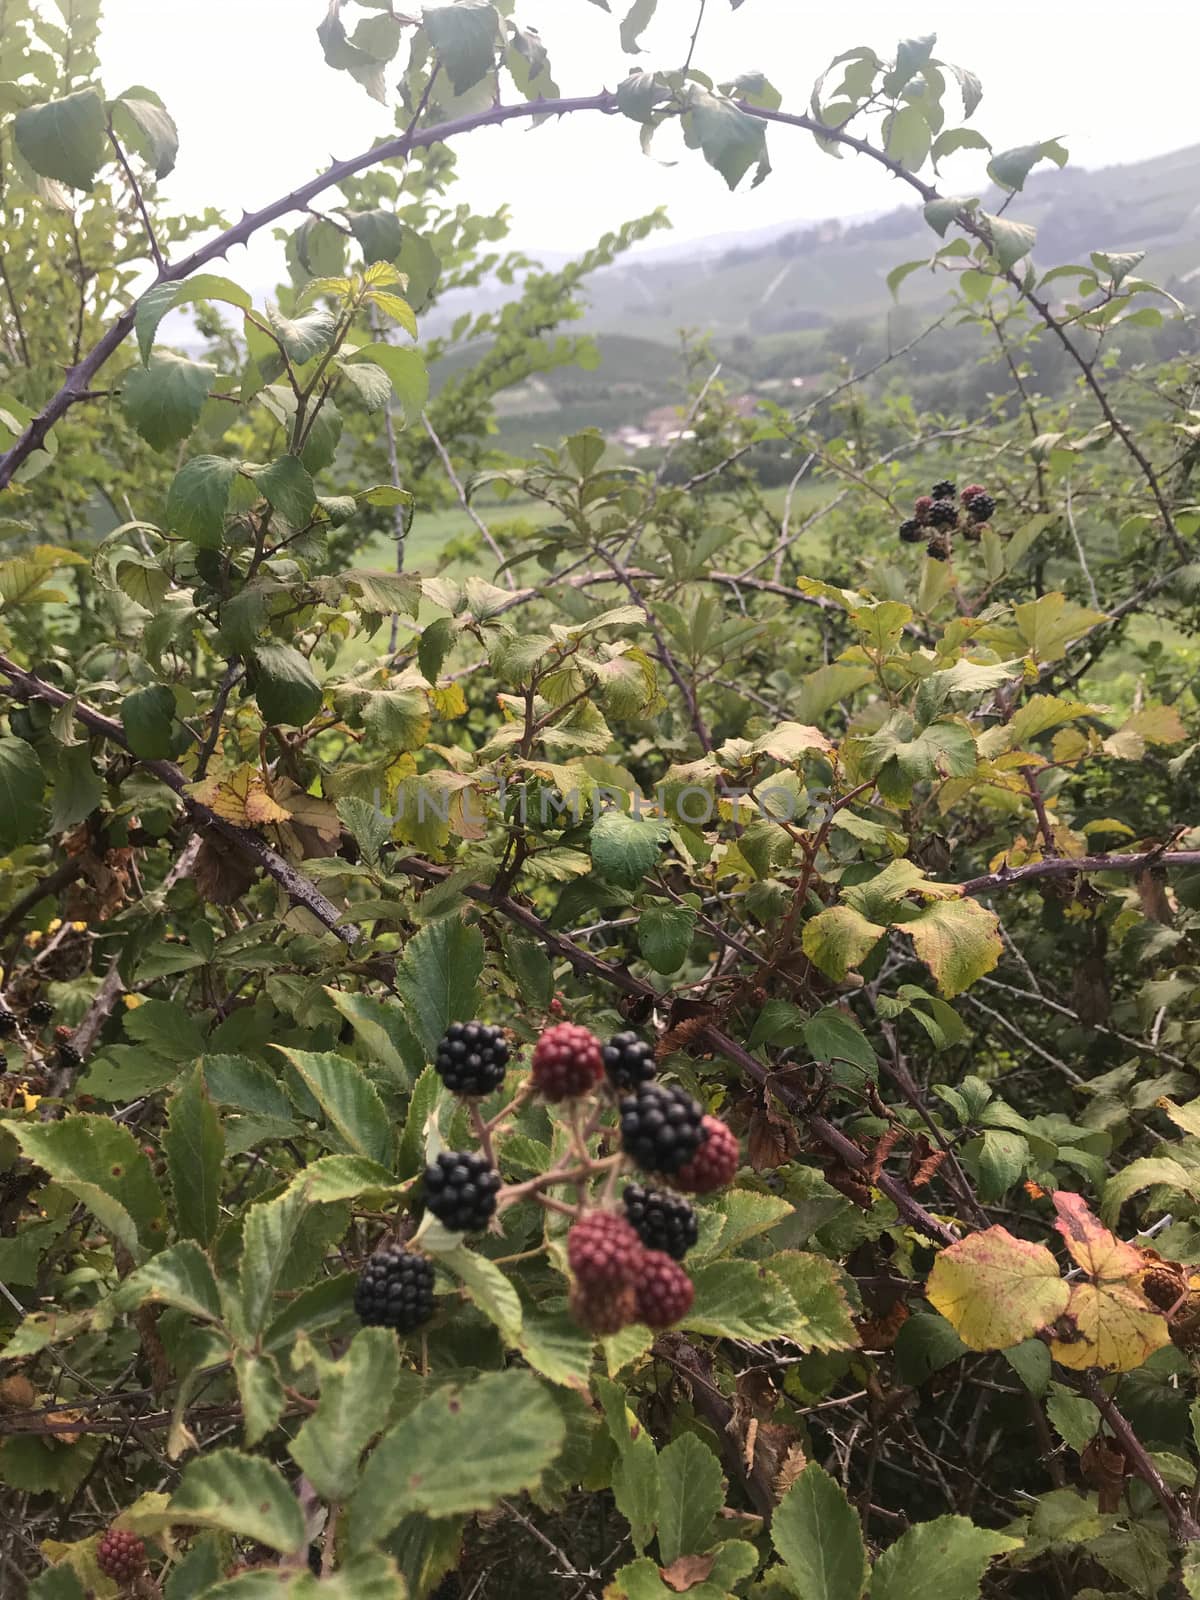 Tasty blackberries along a path. La Morra, Piedmont - Italy